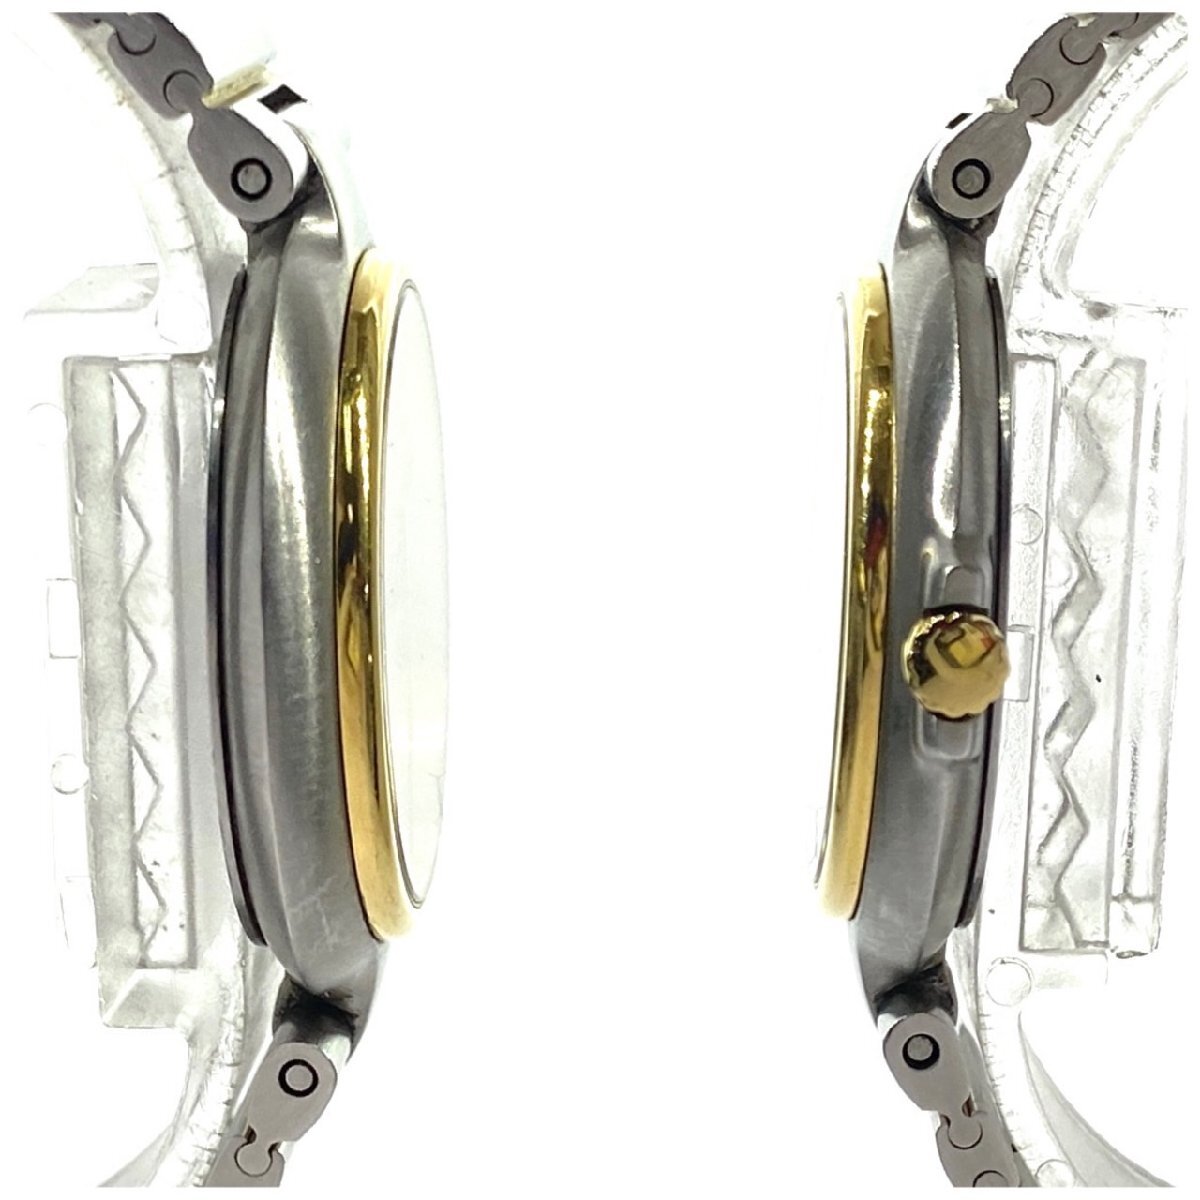 1 иен старт работа товар Dunhill Dunhill мужские наручные часы millenium Date кварц QZ комбинированный цвет раунд лицо 3 стрелки Gold циферблат 